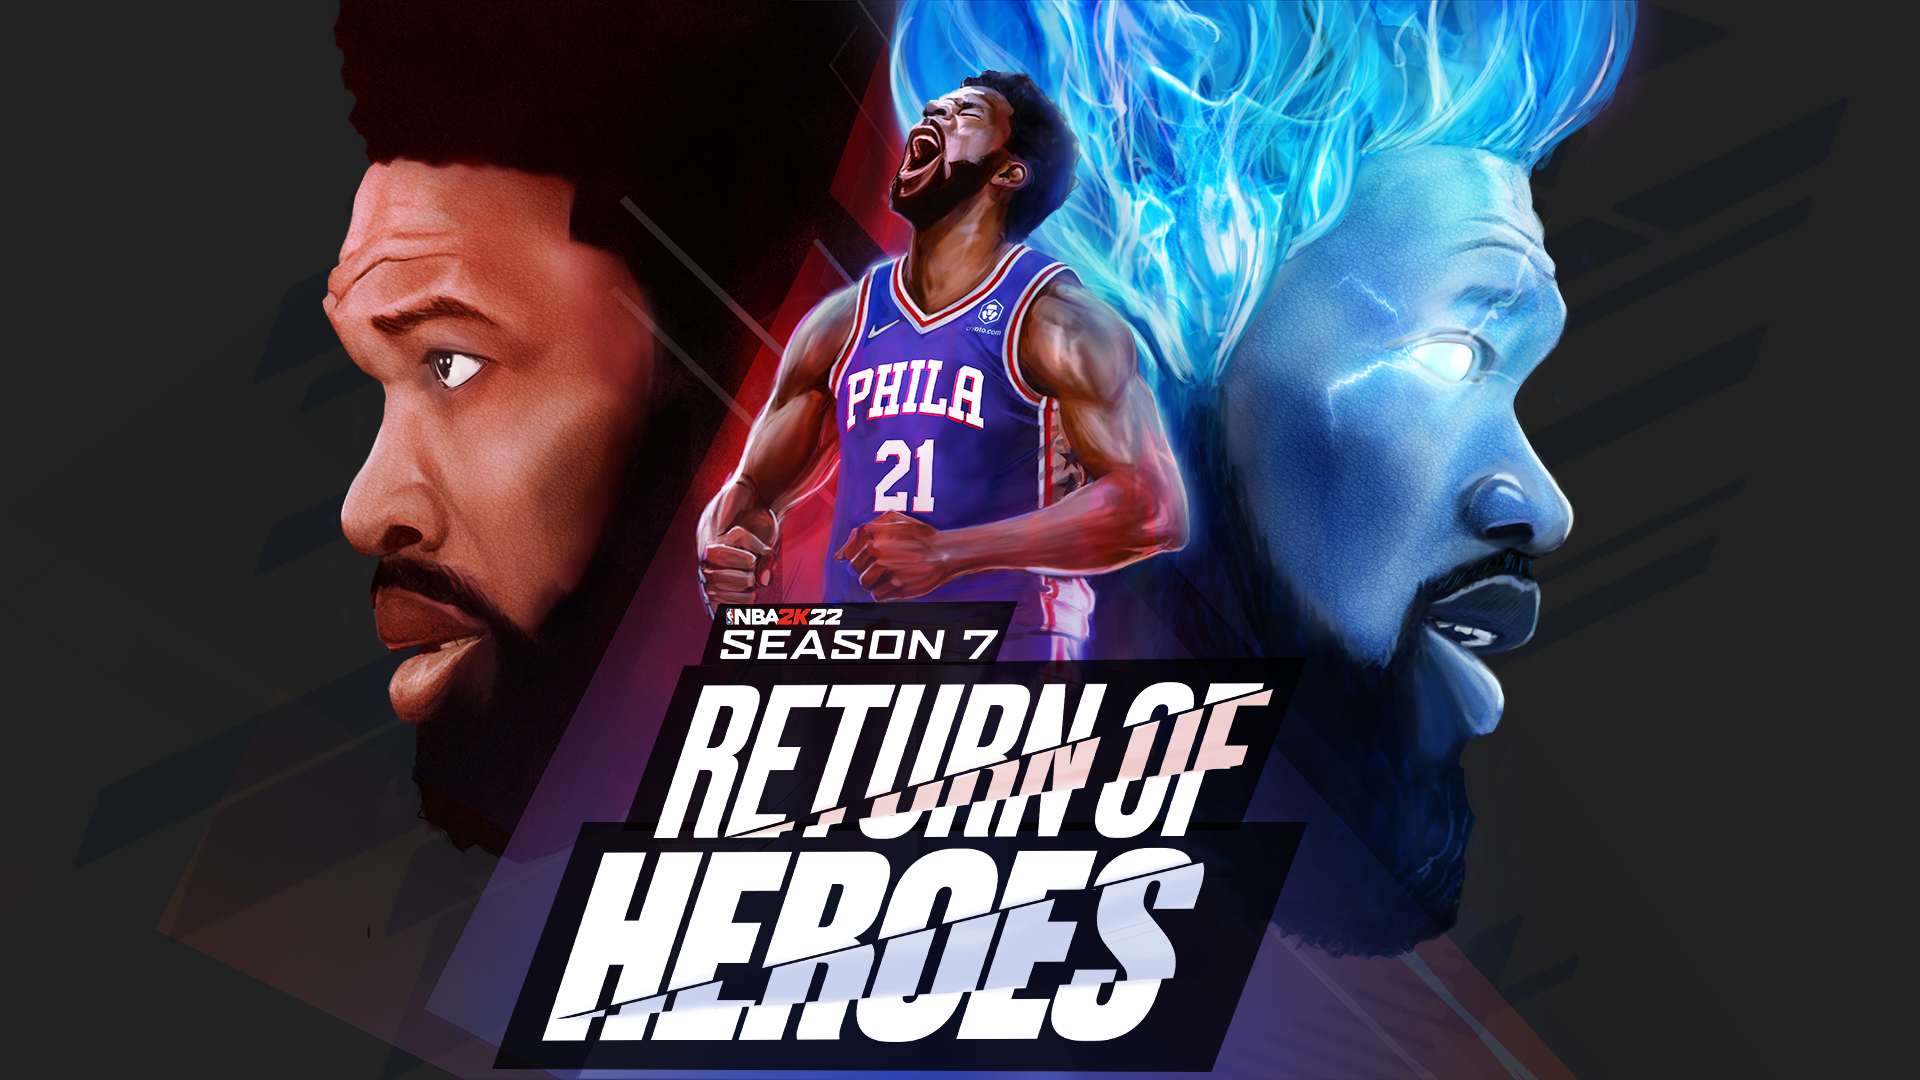 NBA 2K22 Season 7 Return of Heroes: Release Date, Details & Rewards